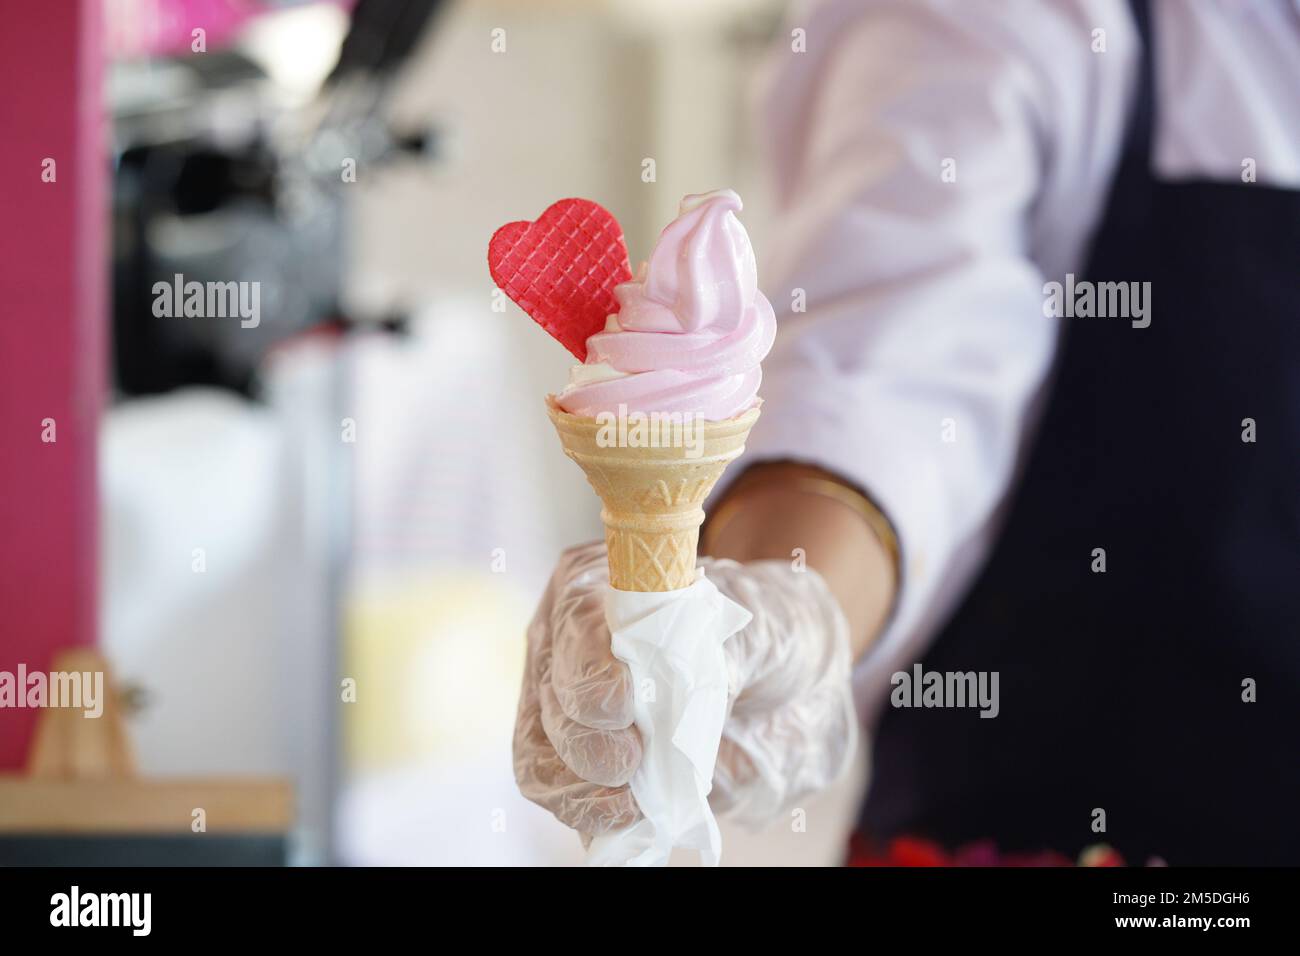 Un operaio con guanti in possesso di un cono gelato con un mix di sapori rosa e vaniglia. Gelato rosa con cuore rosso. Foto Stock